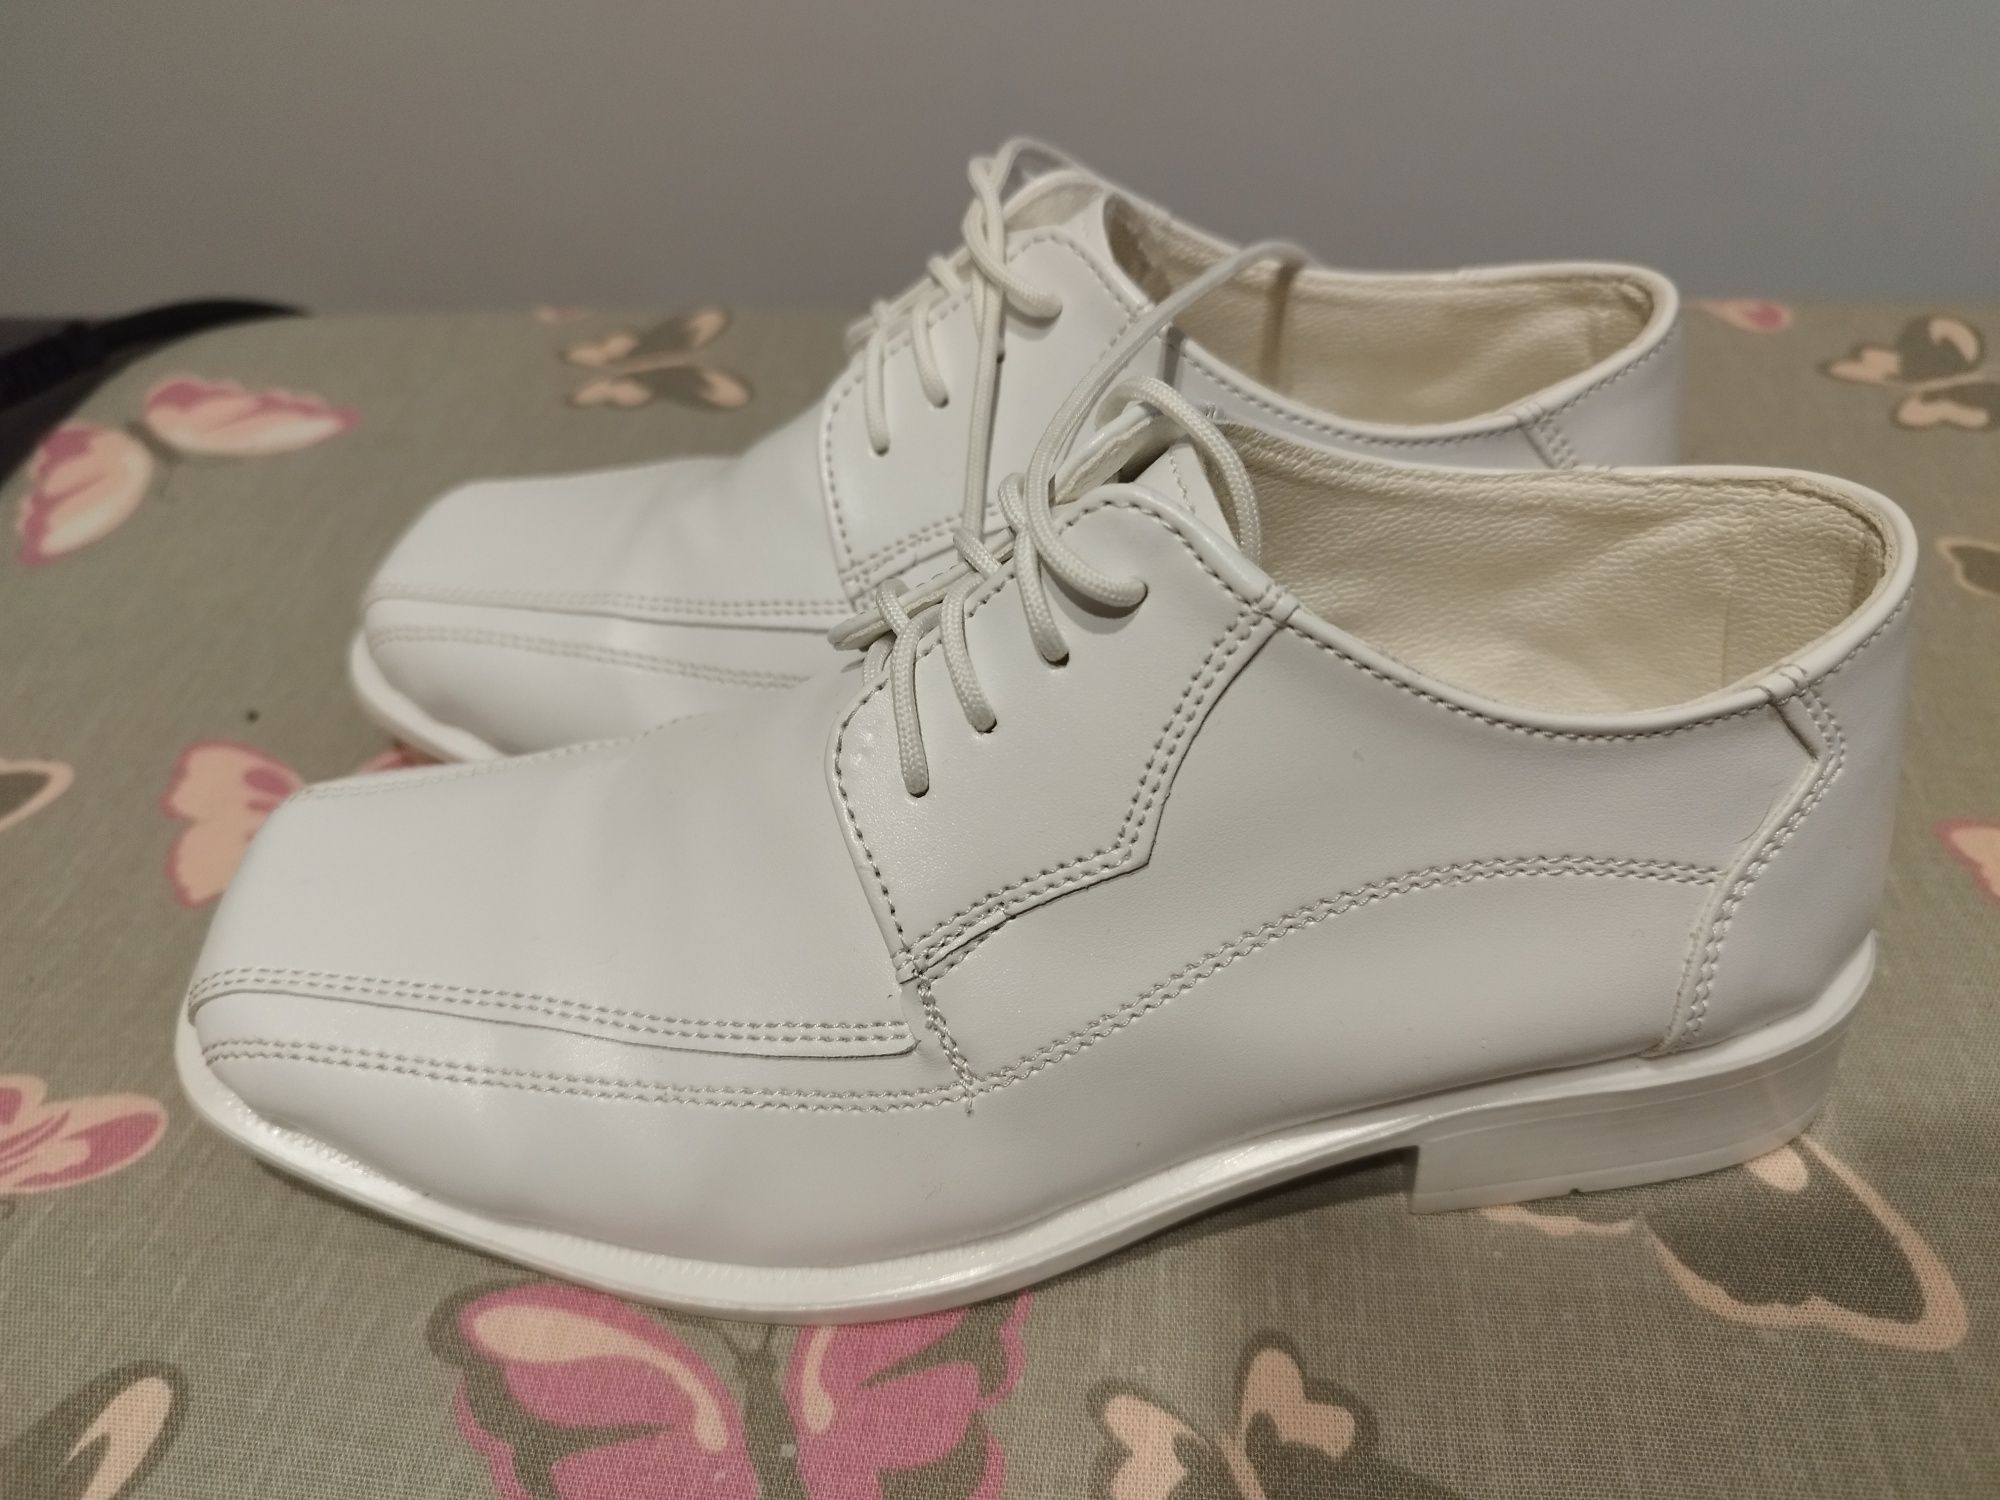 Białe buty komunijne, r 33 jak nowe